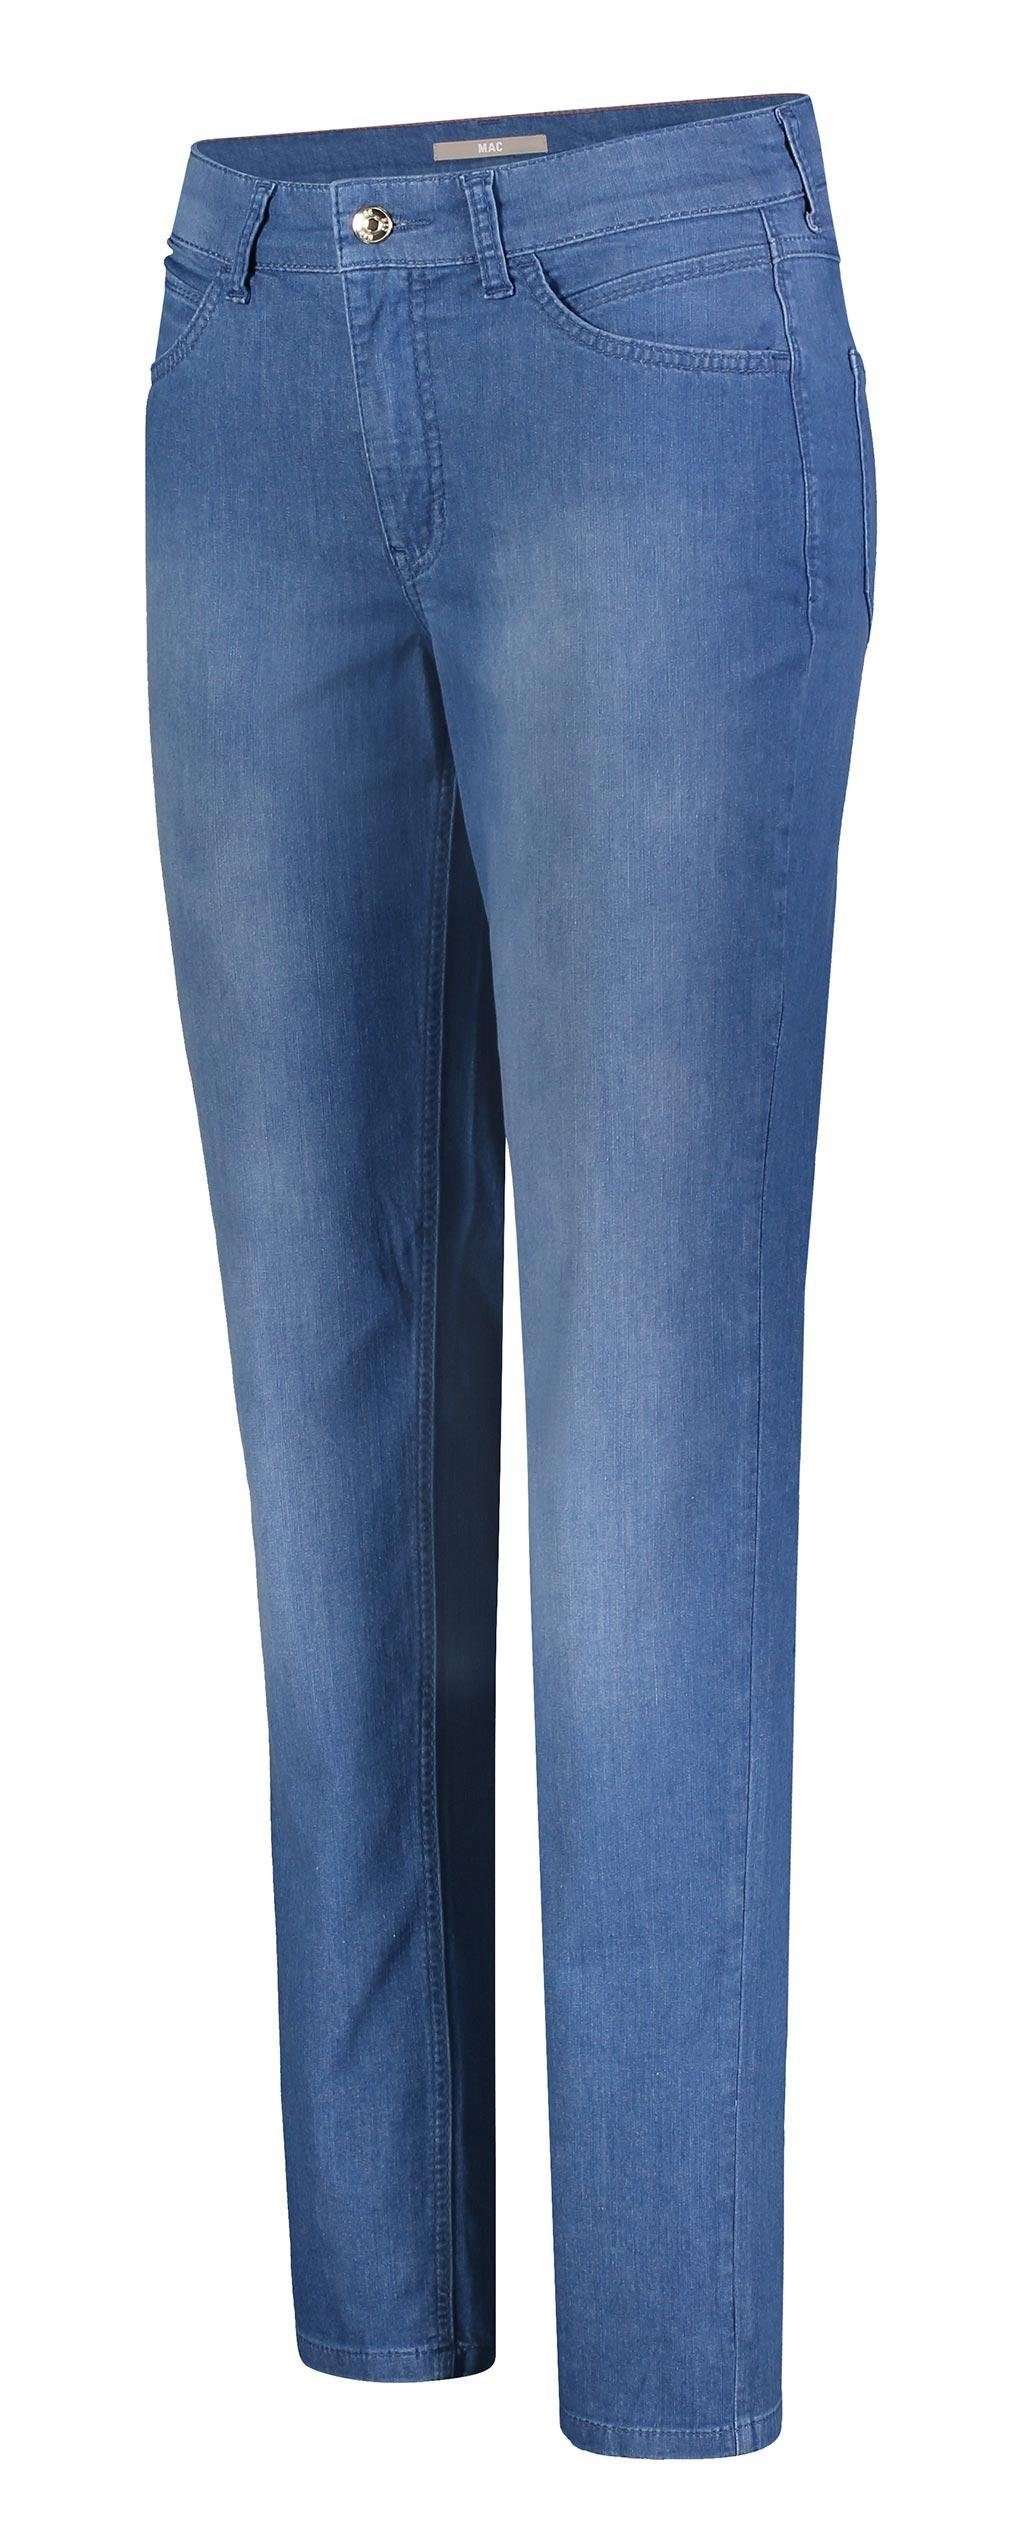 MAC Stretch-Jeans MAC MELANIE clean light blue wash 5040-90-0392L D248